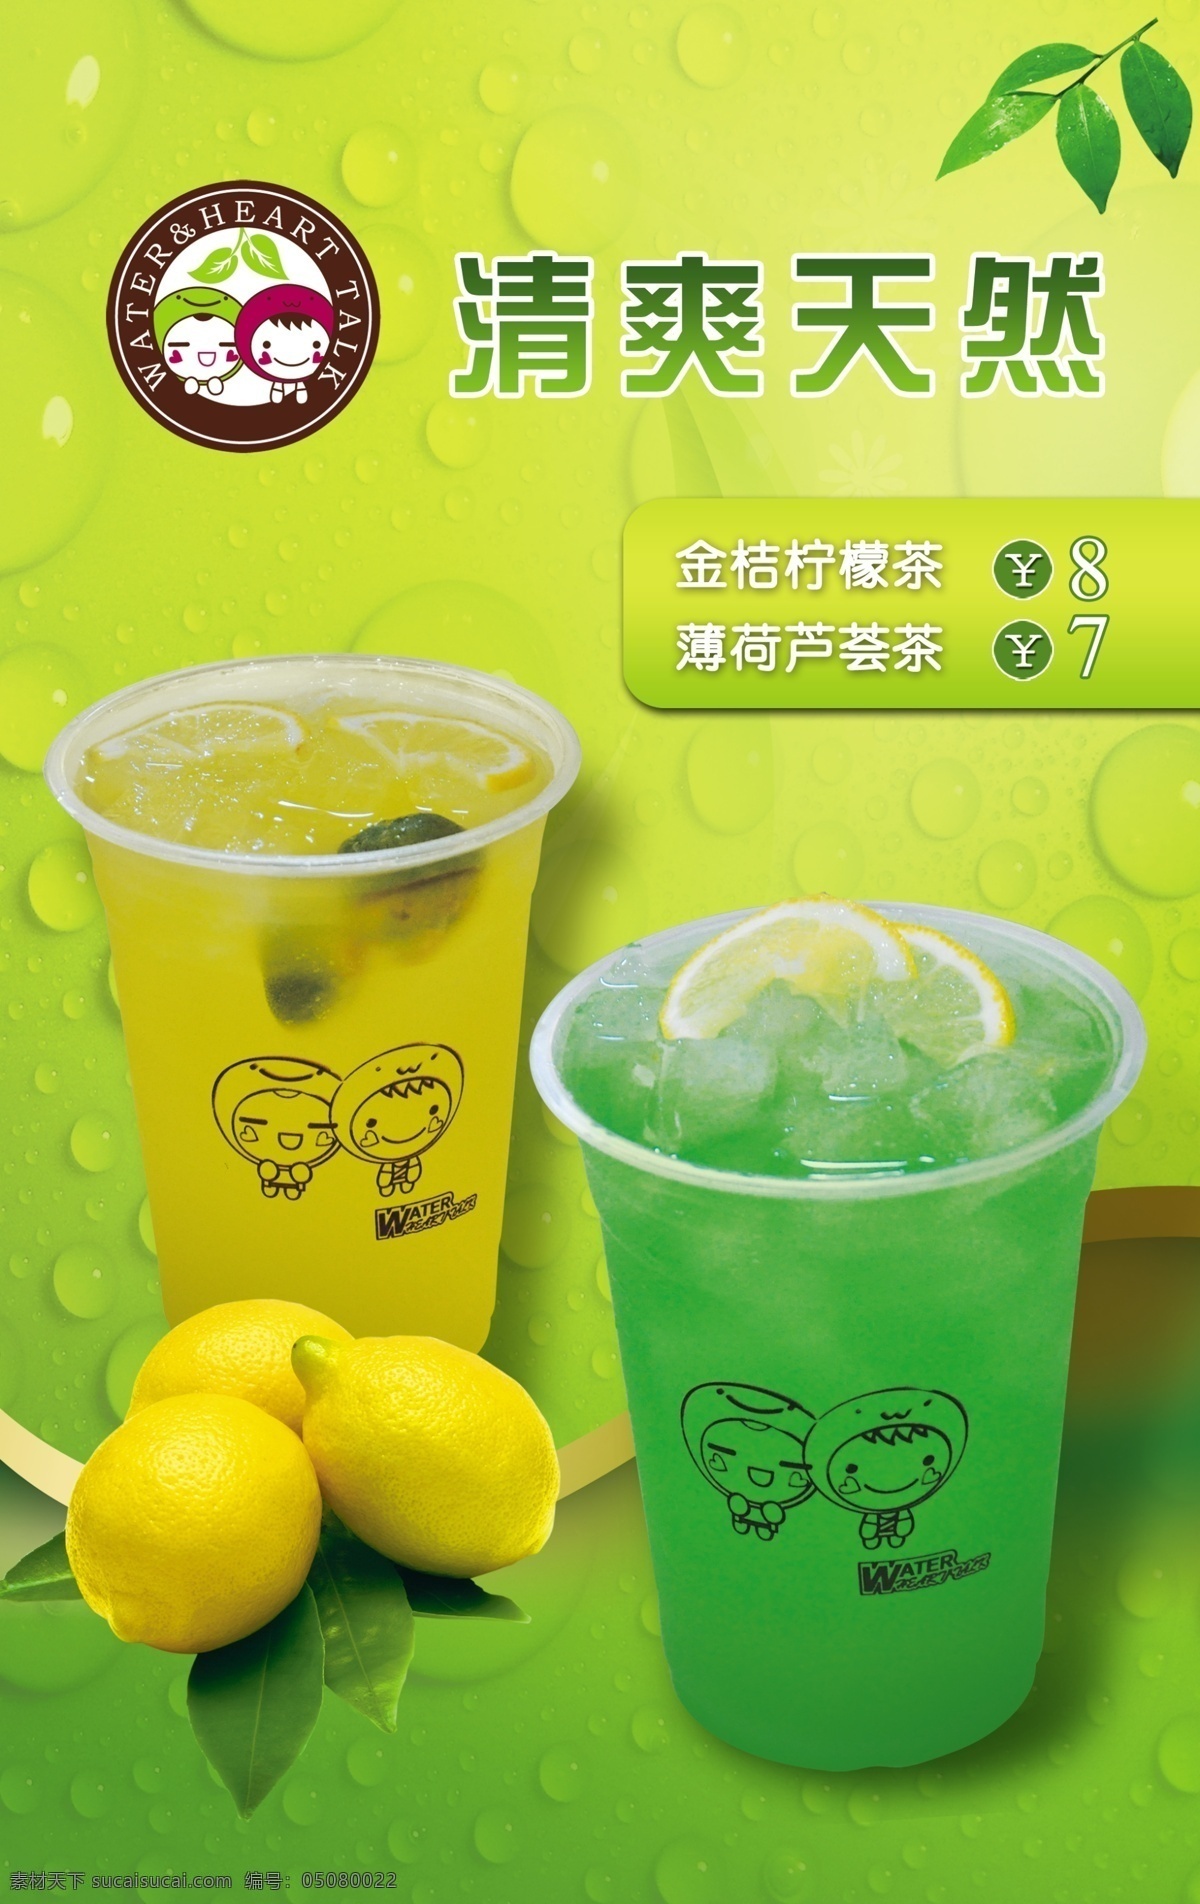 茶饮 灯箱 广告设计模板 奶茶 源文件 饮品 海报 模板下载 高 像素 矢量图 日常生活